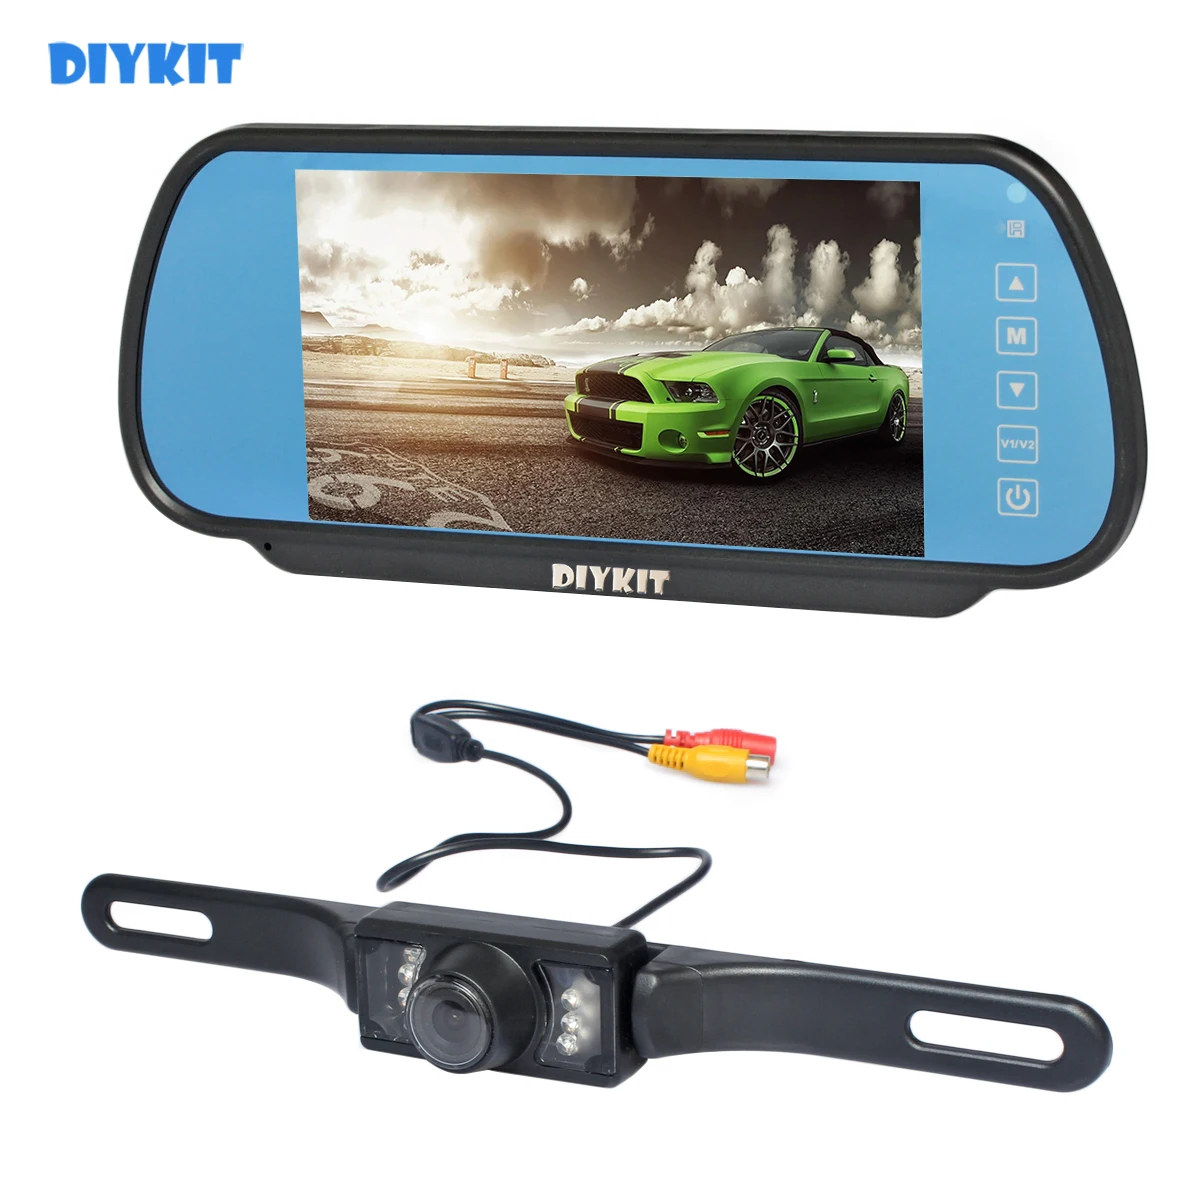 

Автомобильная парковочная система DIYKIT HD, ИК камера заднего вида с ночным видением и 7-дюймовым монитором для зеркала заднего вида